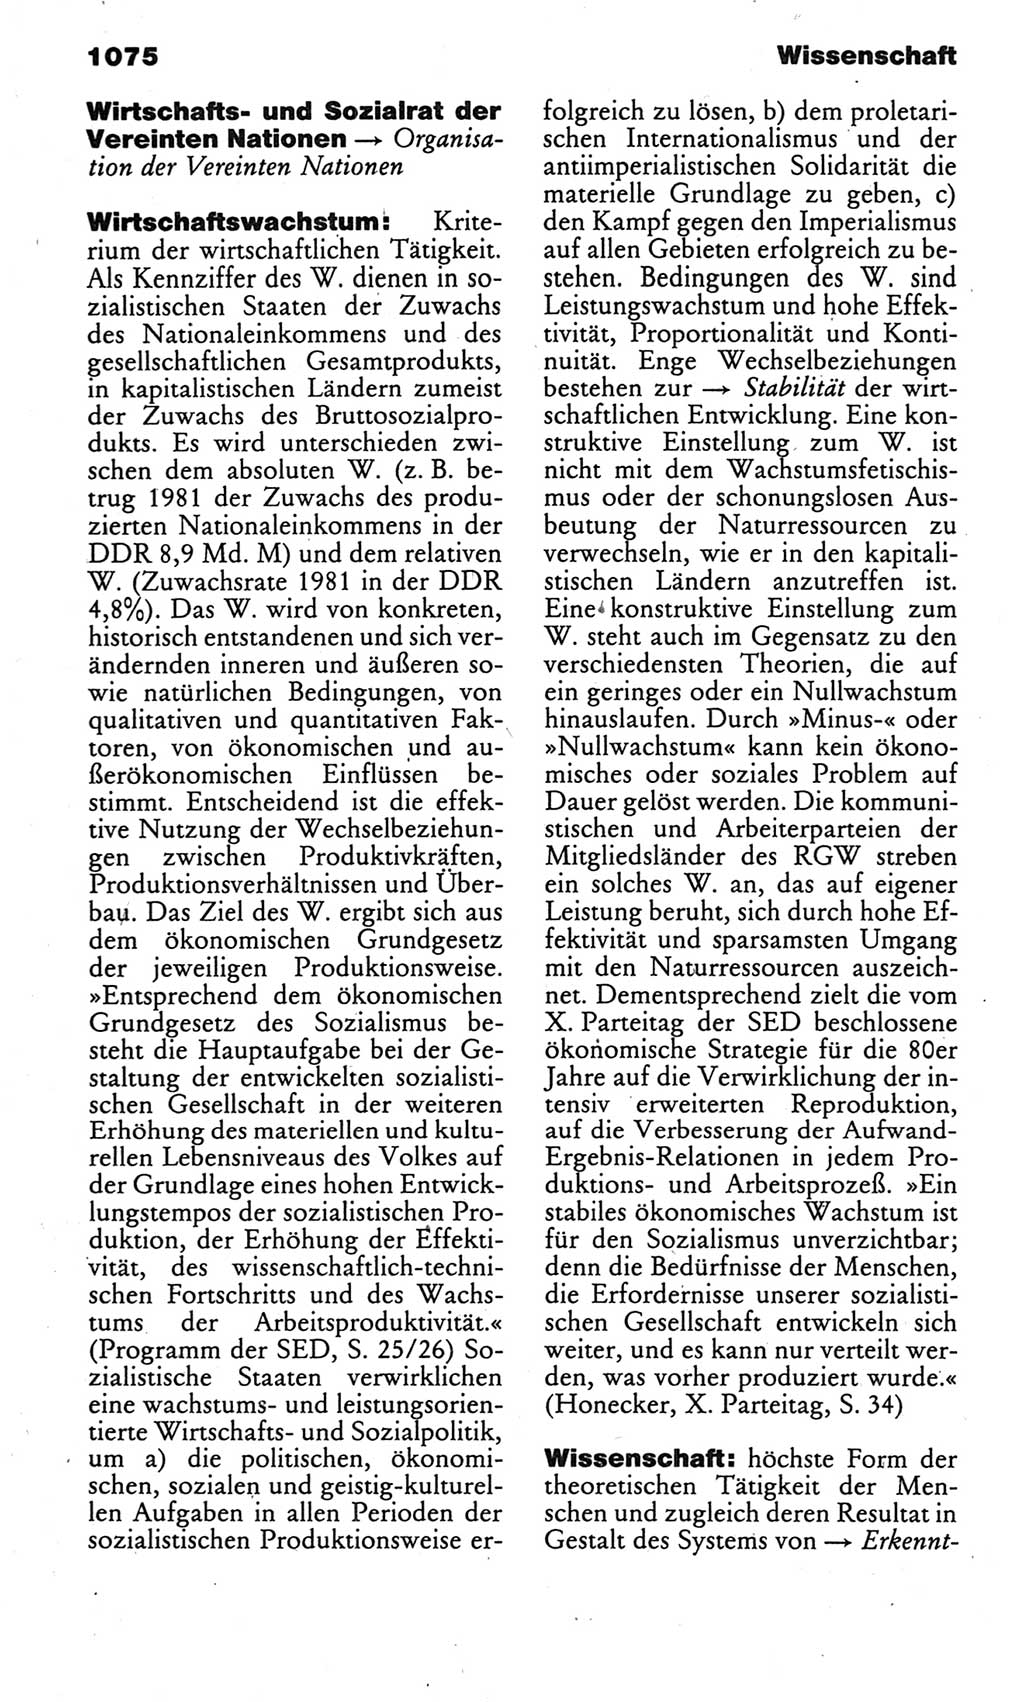 Kleines politisches Wörterbuch [Deutsche Demokratische Republik (DDR)] 1985, Seite 1075 (Kl. pol. Wb. DDR 1985, S. 1075)